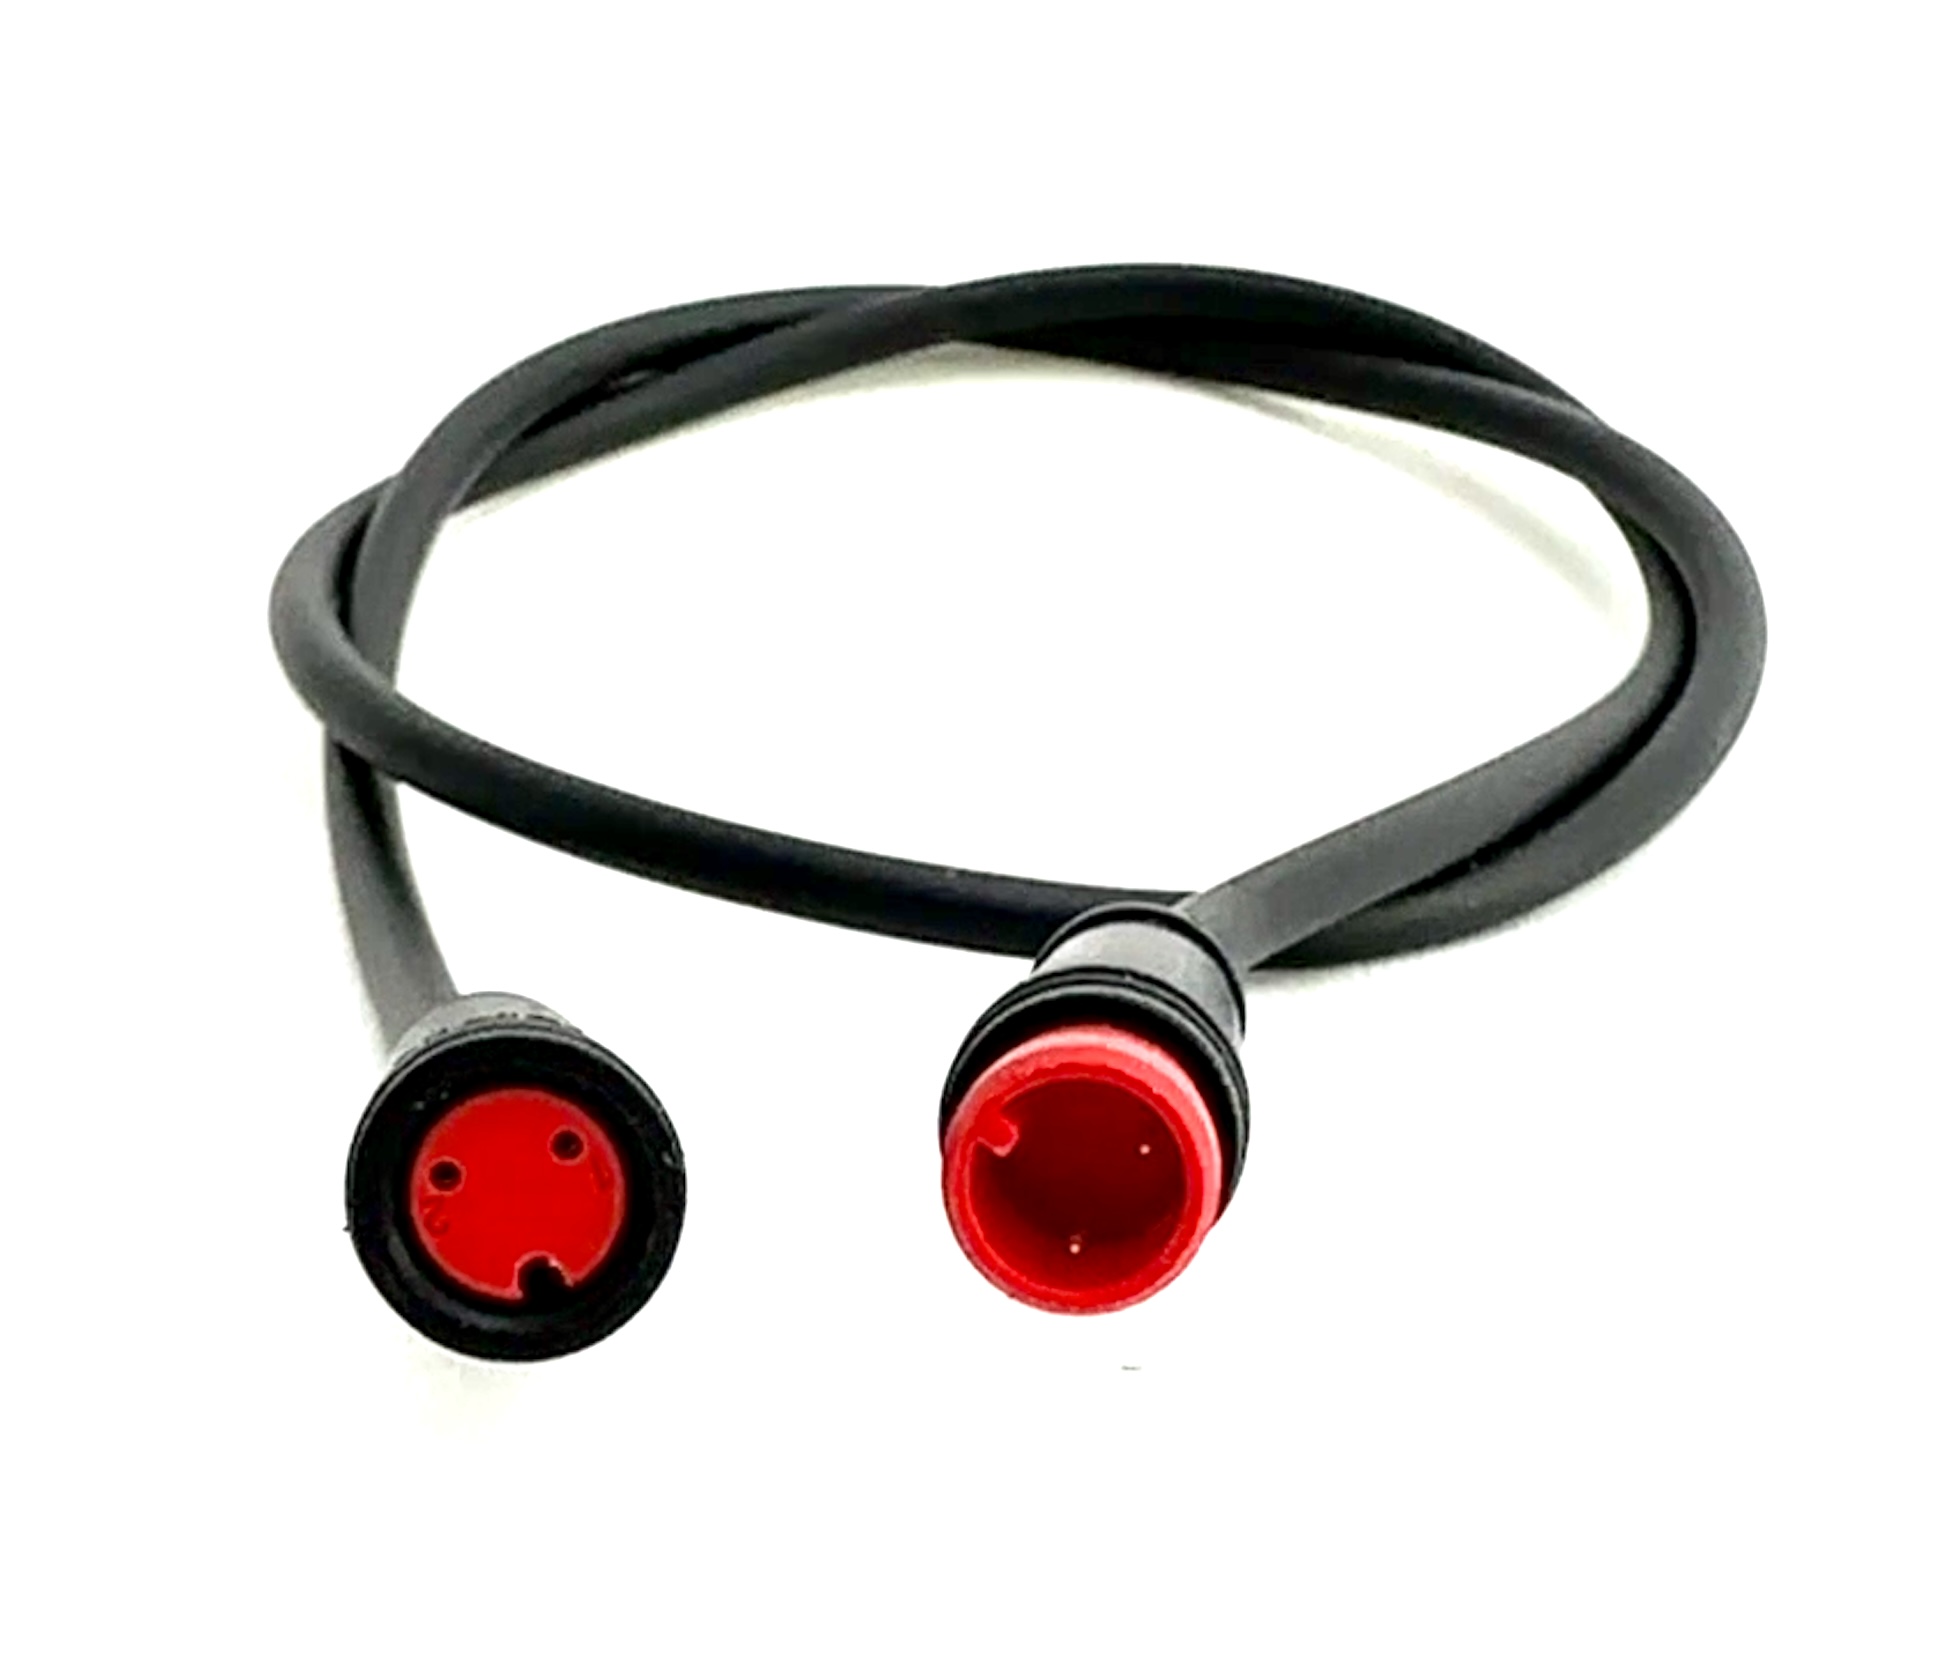 HIGO / Julet cable de extensión de 100 cm para ebike, 2 PIN hembra a macho, rojo